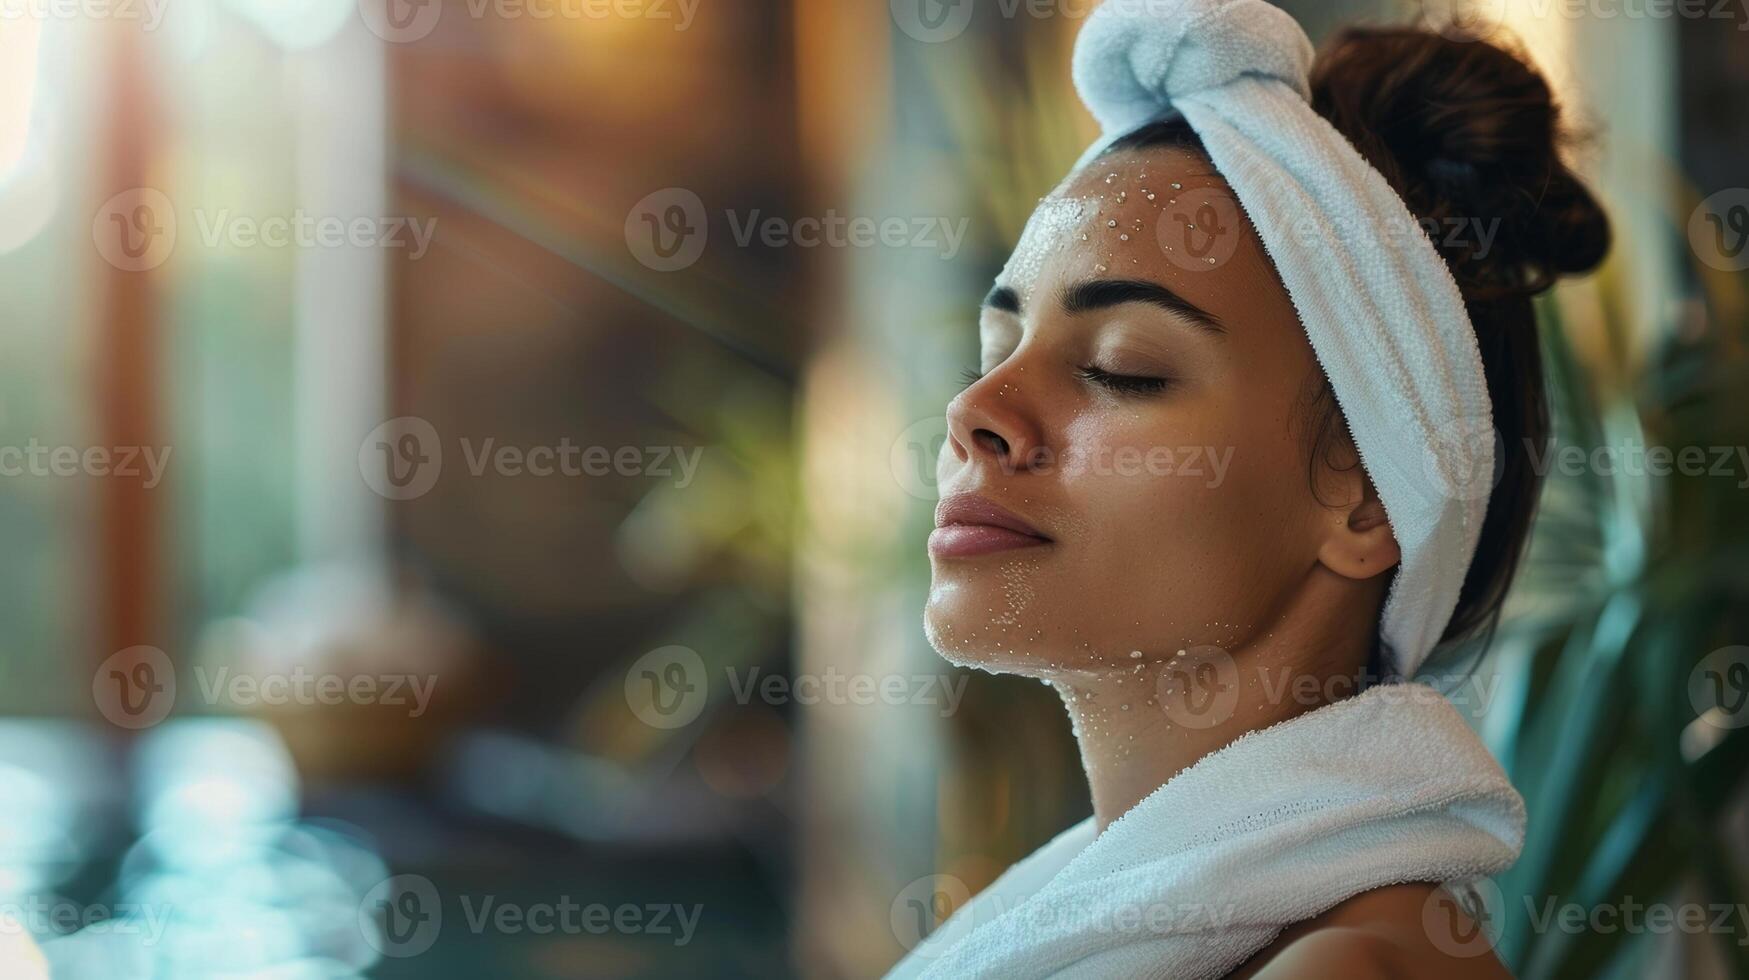 une serein image de une femme faire un pas en dehors de le sauna avec perles de transpiration sur sa front et une serviette autour sa cou incorporant le sentiment de rajeunissement et revitalisation cette sauna thérapie photo